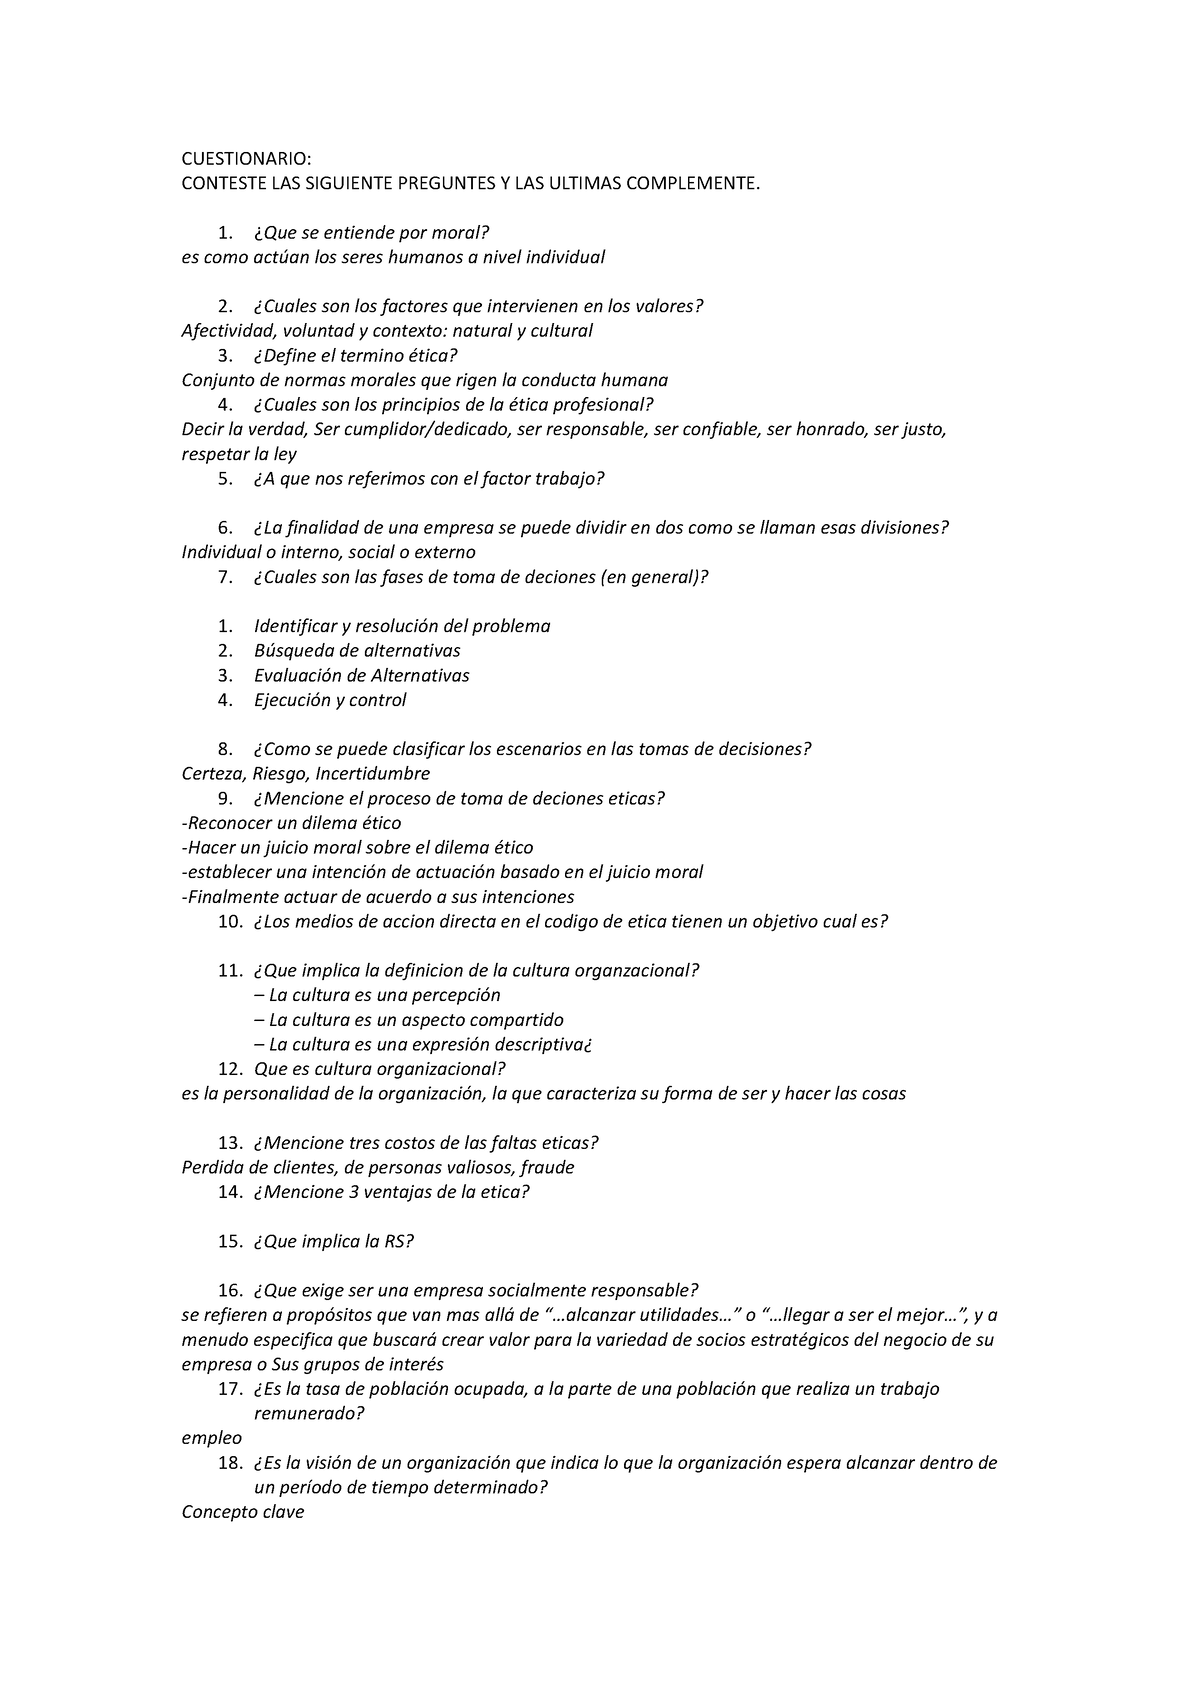 Cuestionario Etica Profesional 2023 Conceptos Basicos Cuestionario Conteste Las Siguiente 5865